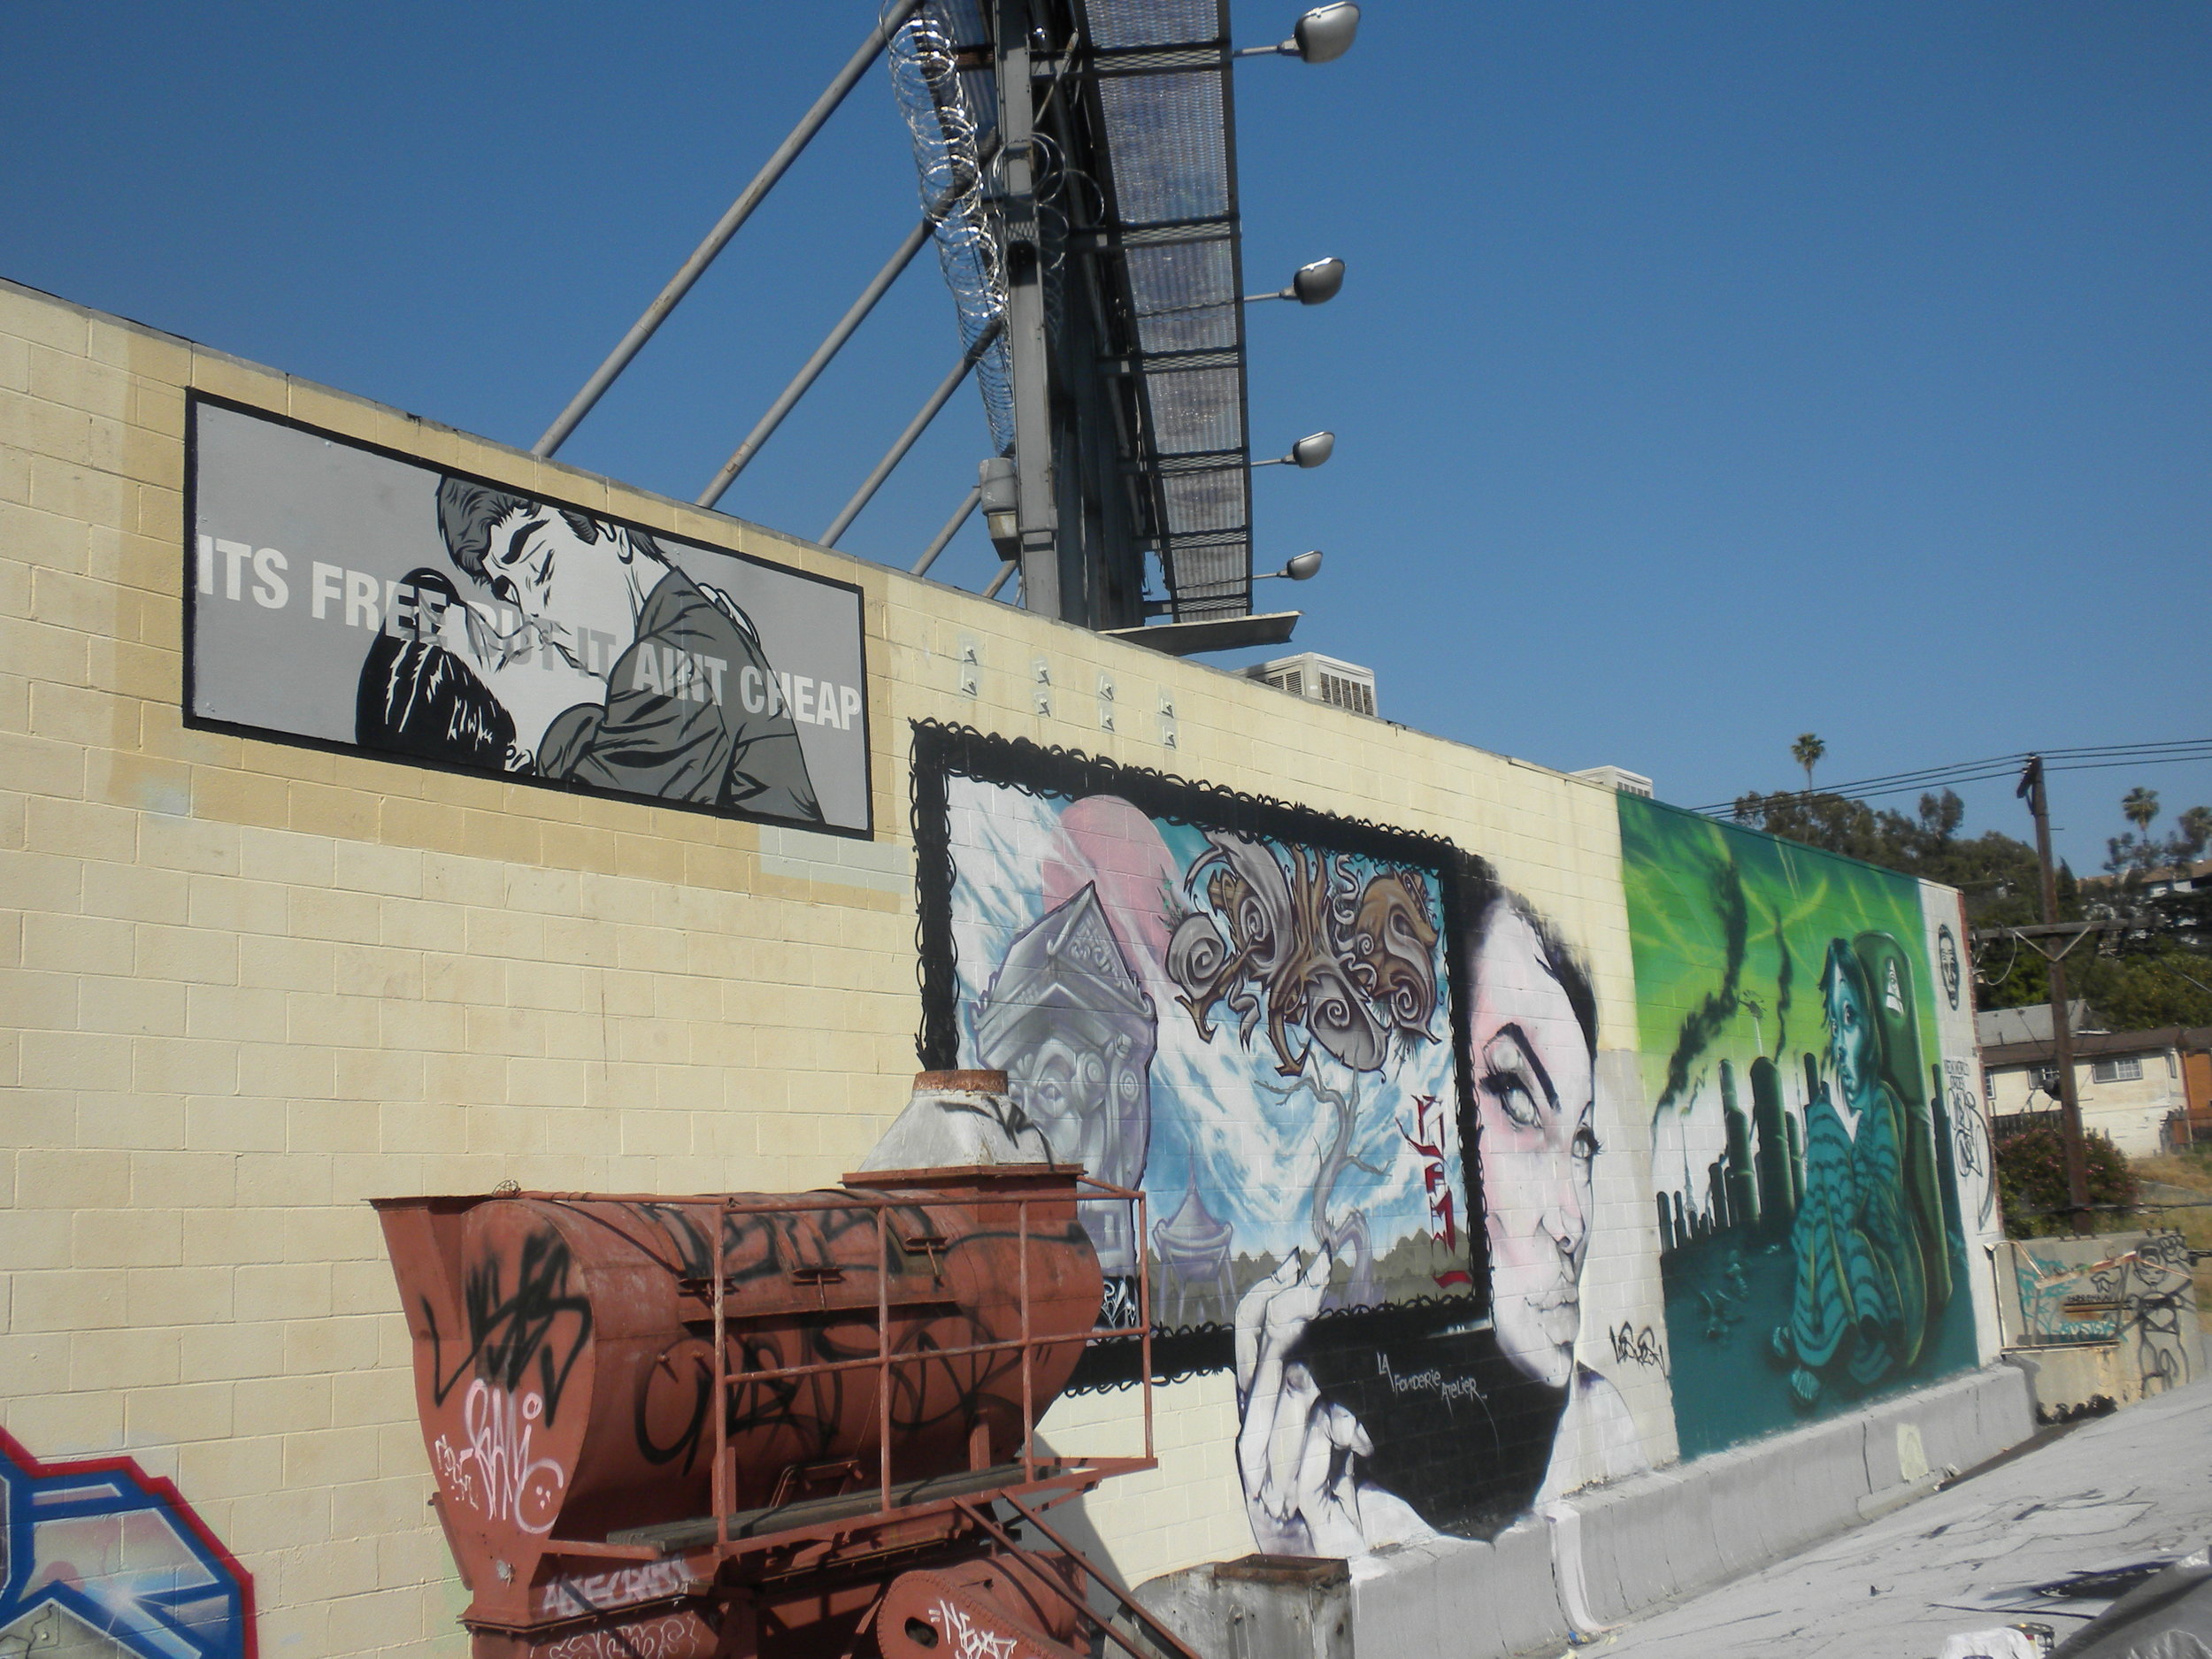 "It's free, but it ain't cheap" public painting, Echo Park/Los Angeles CA